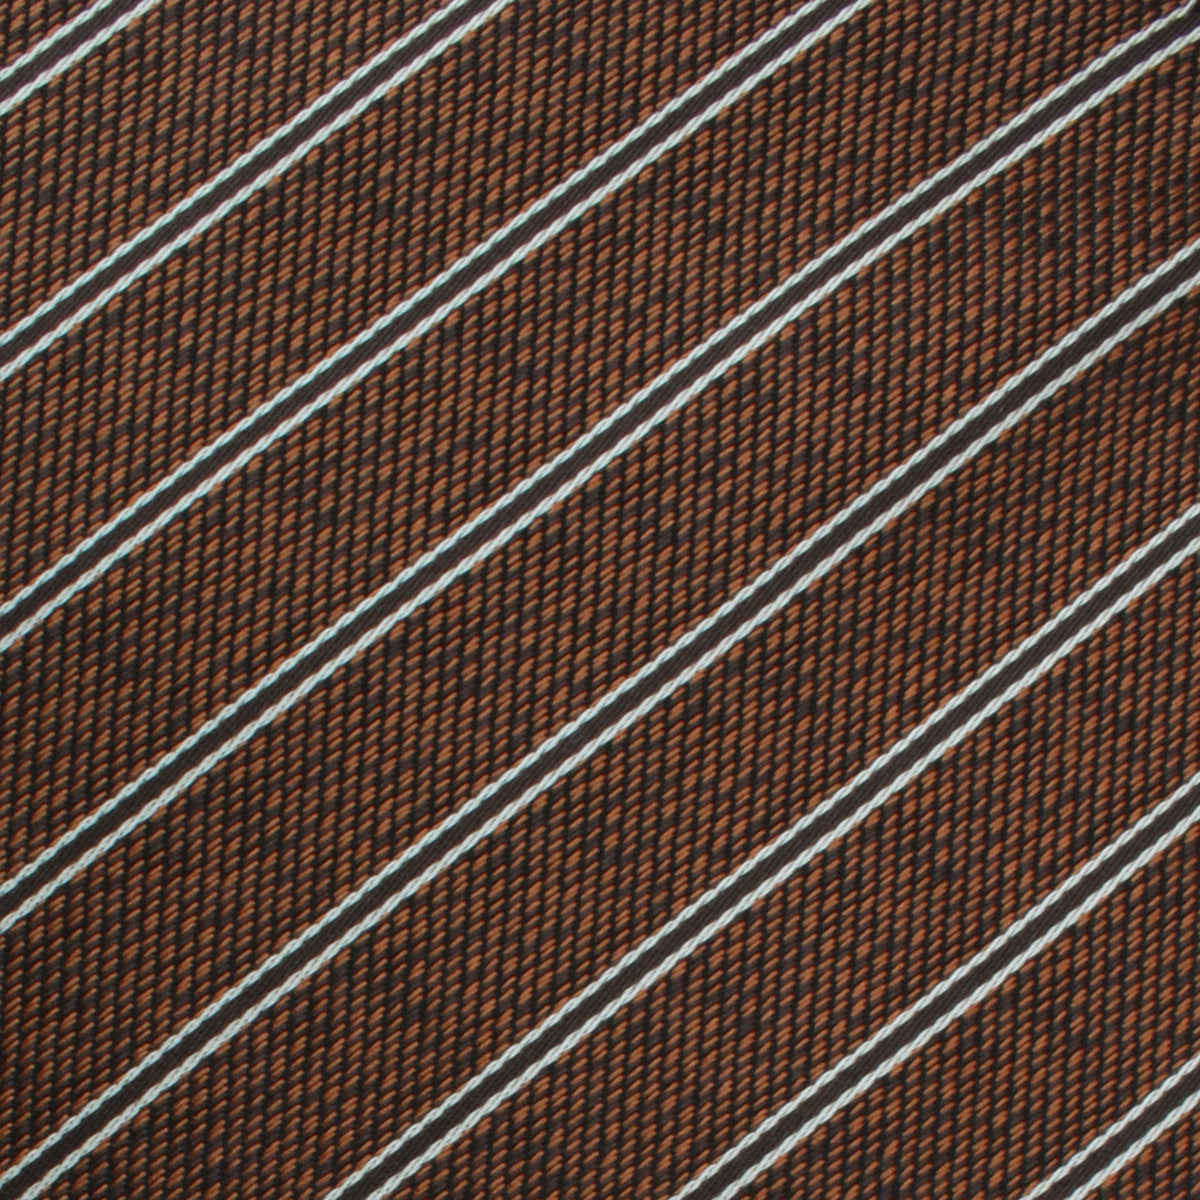 Manhattan Brown Bronze Striped Kids Bow Tie Fabric